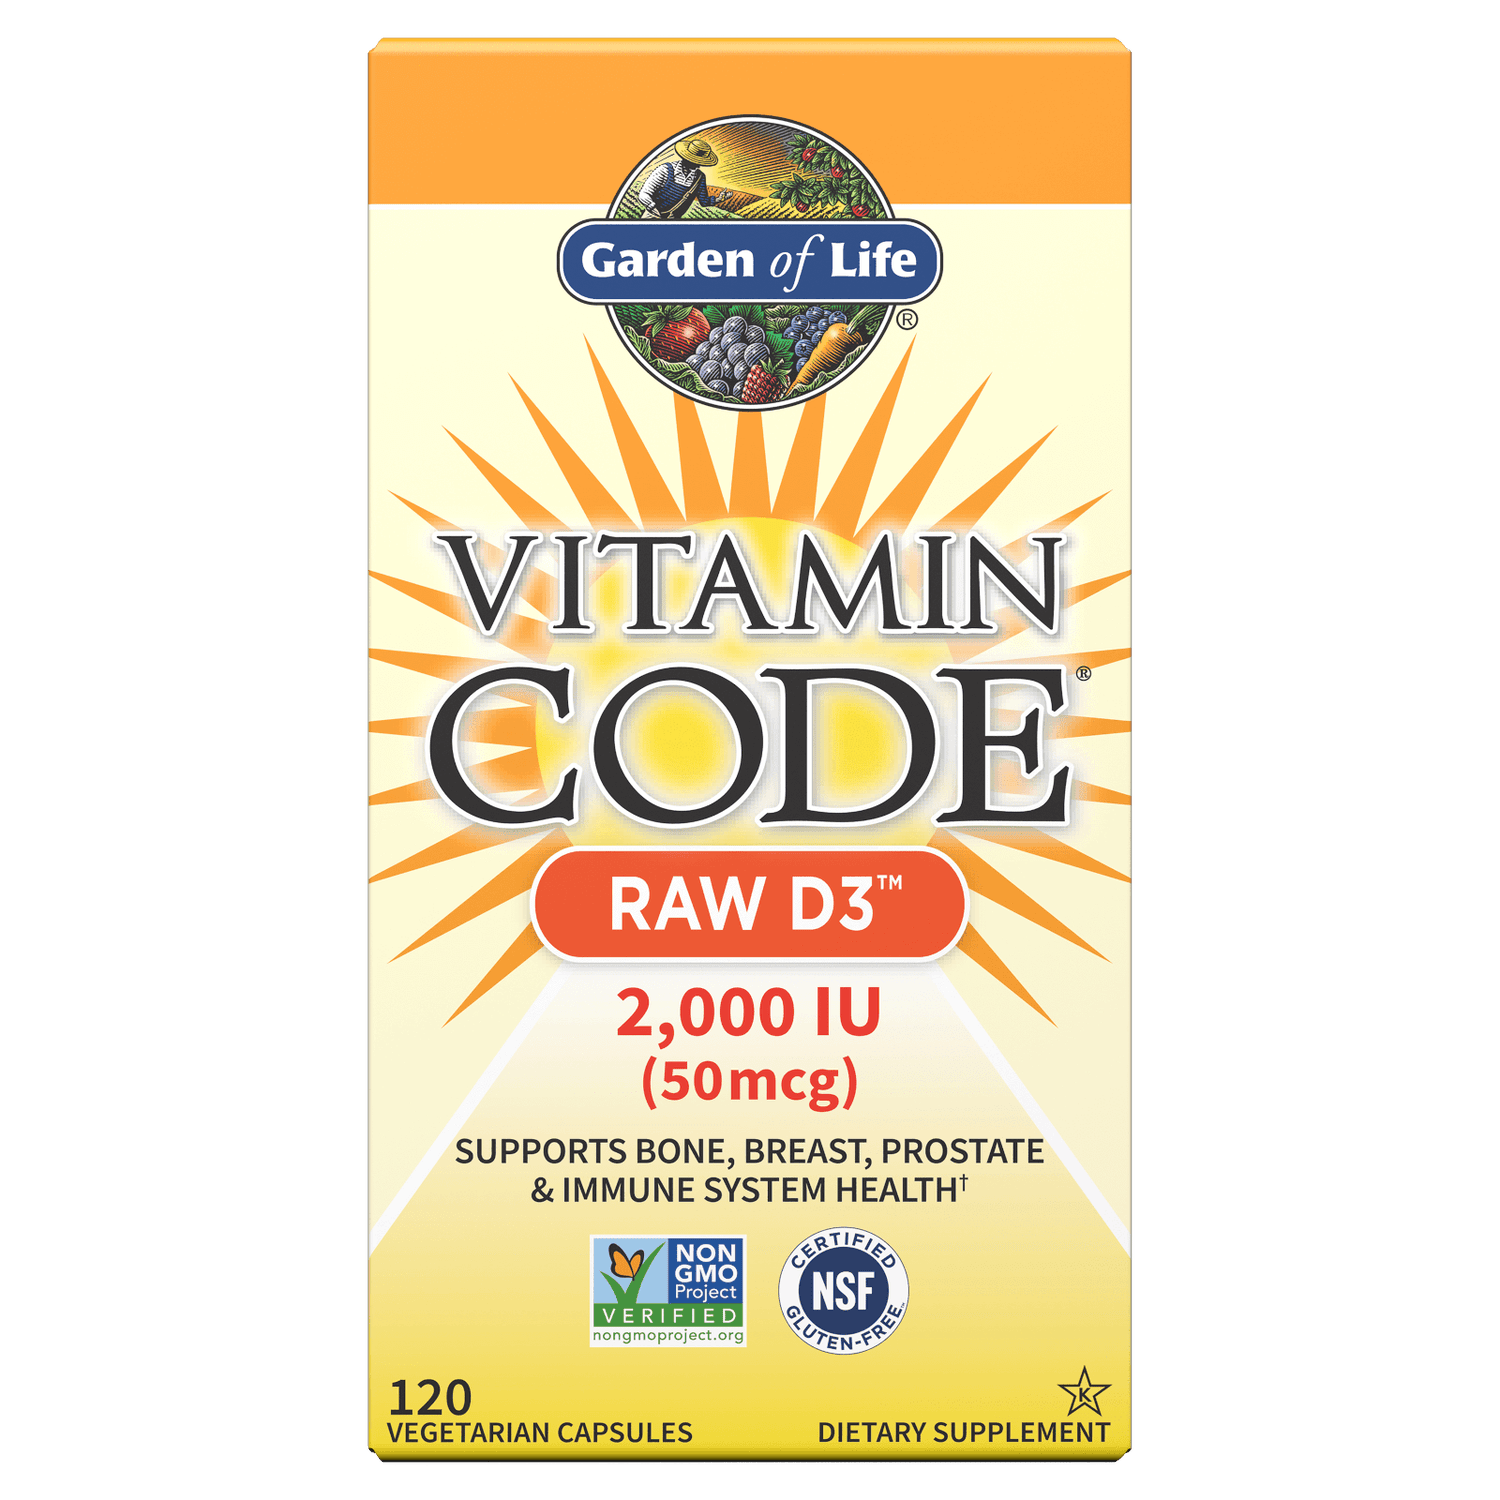 Vitamin Code Raw D3 2000 lu 120ct Capsules